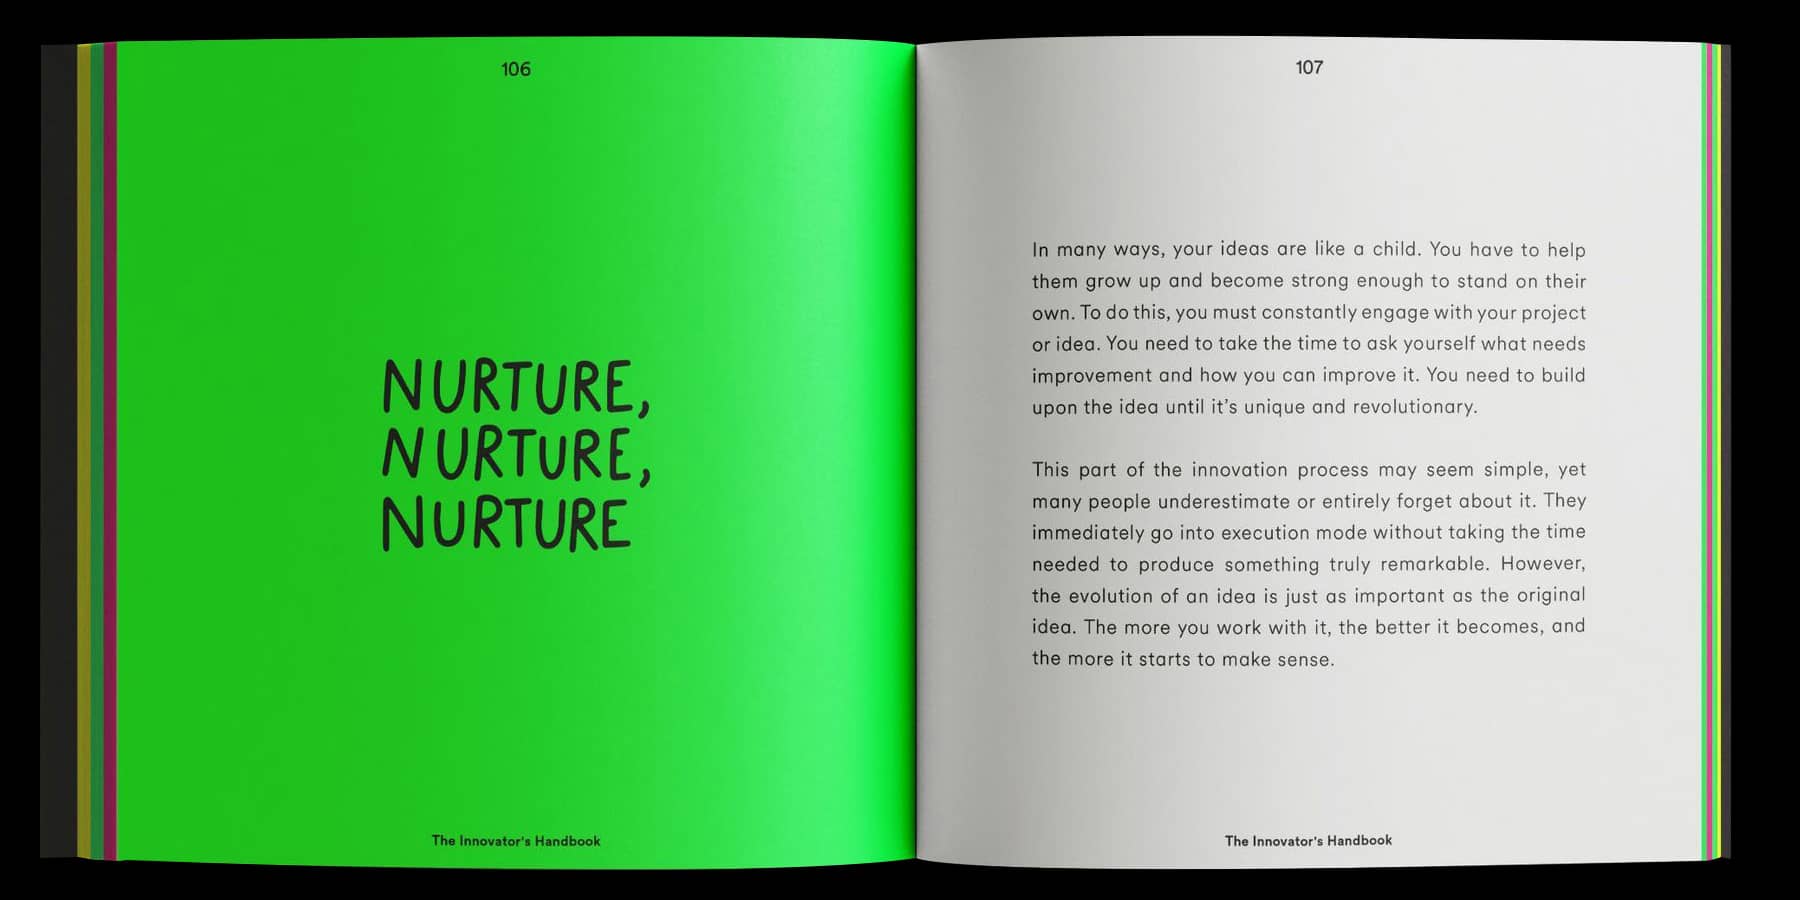 Example book page with "Nurture, Nurture, Nurture" title